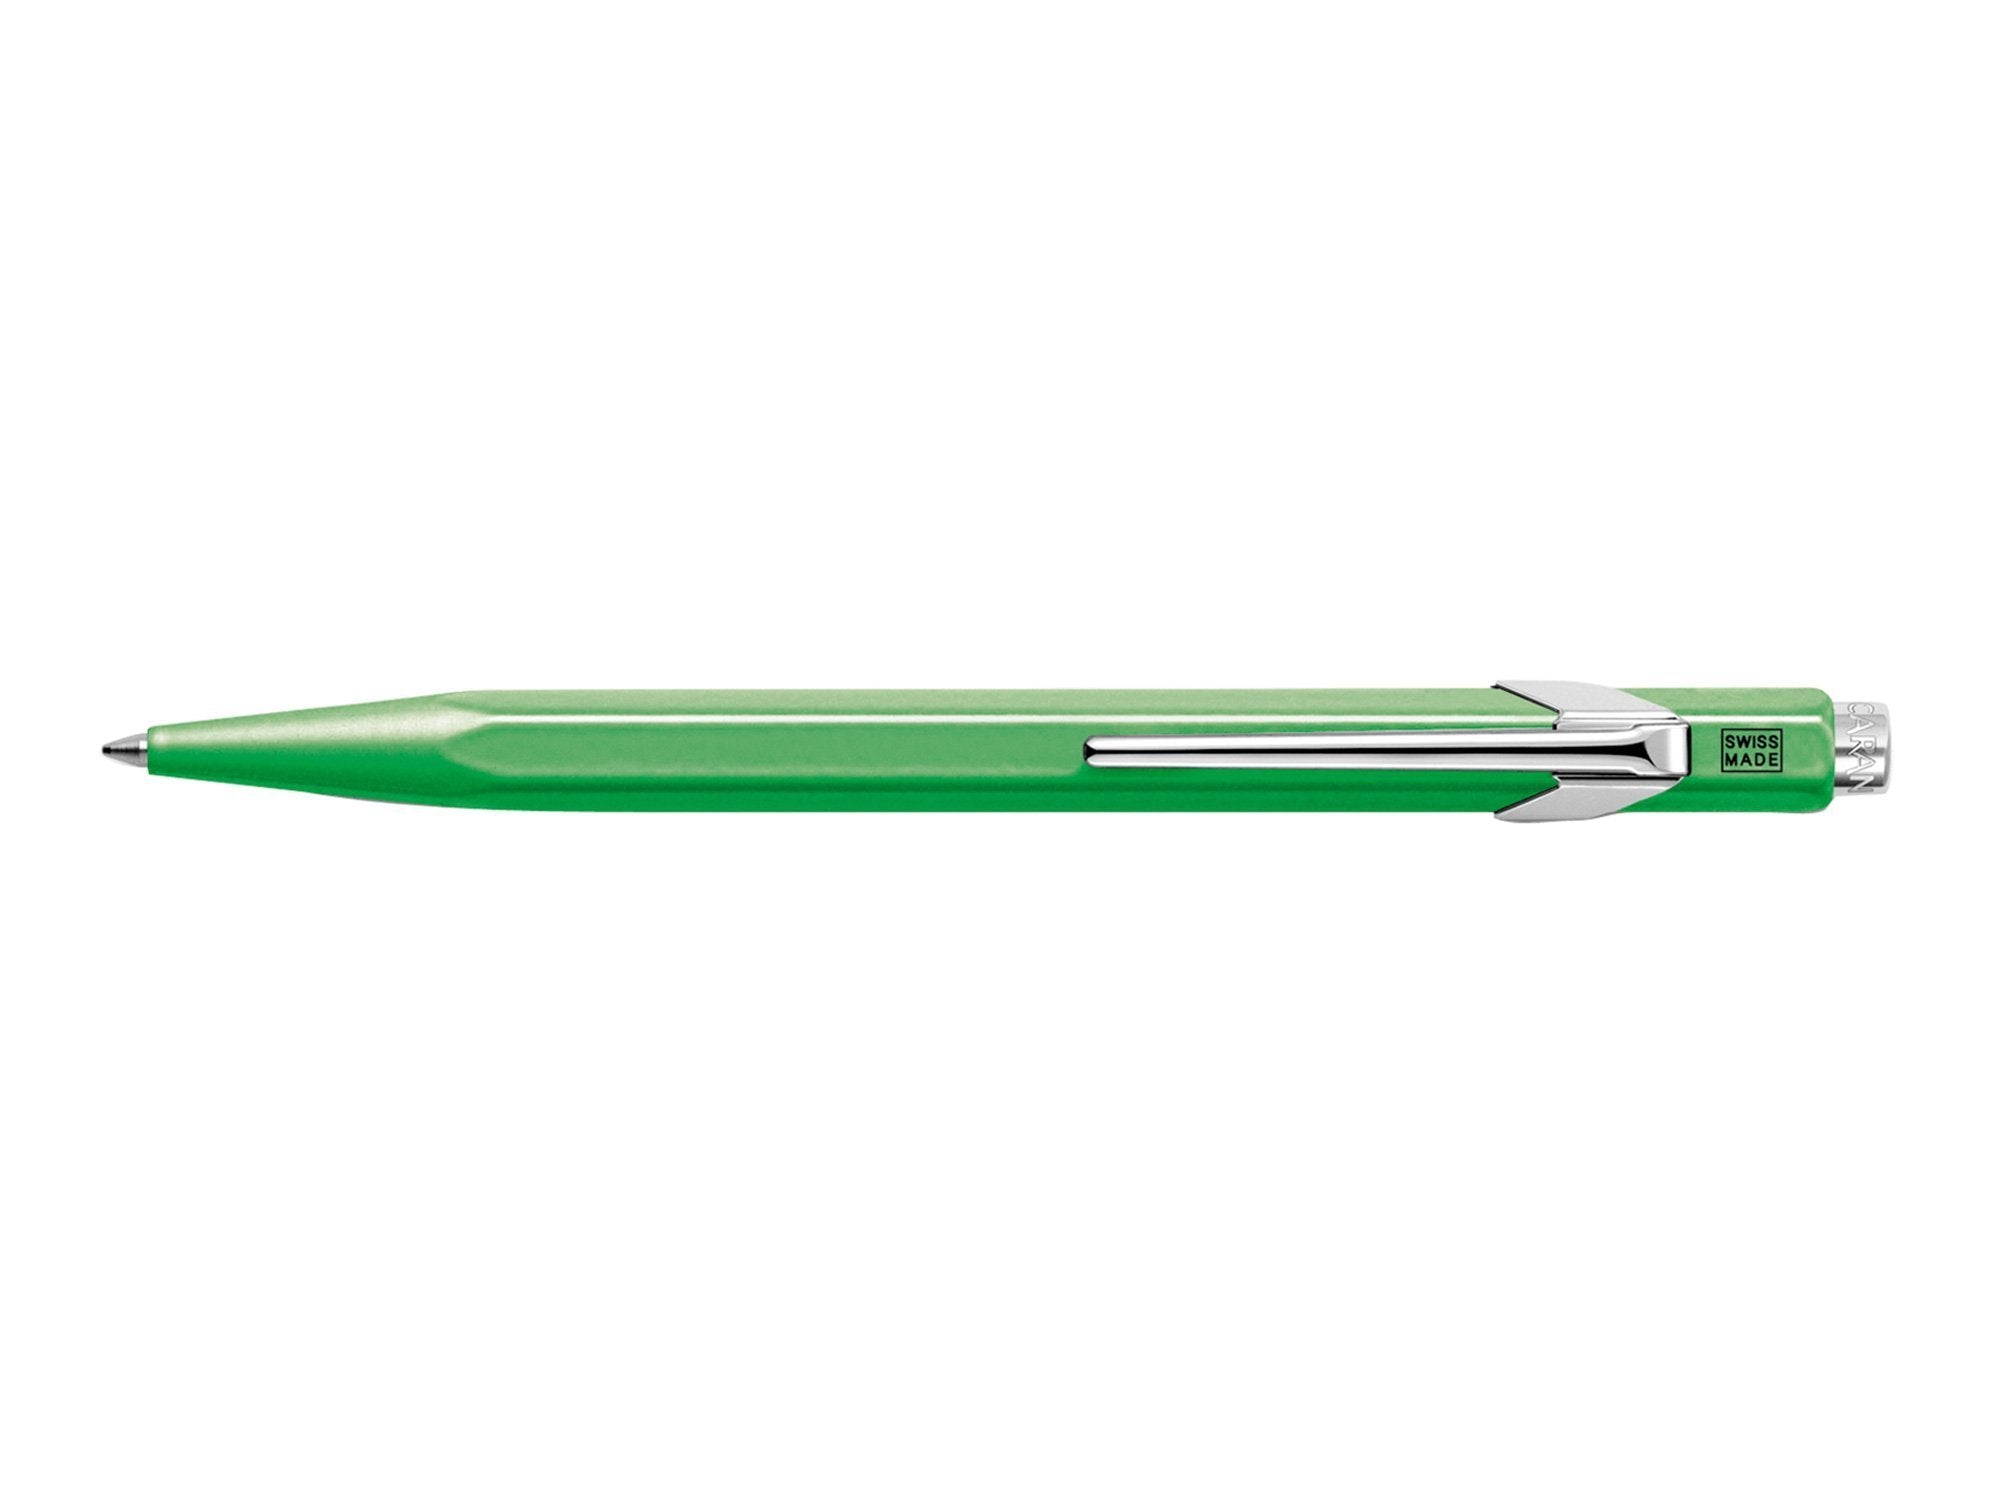 Caran d'Ache 849 Ballpoint Pen Fluorescent Green